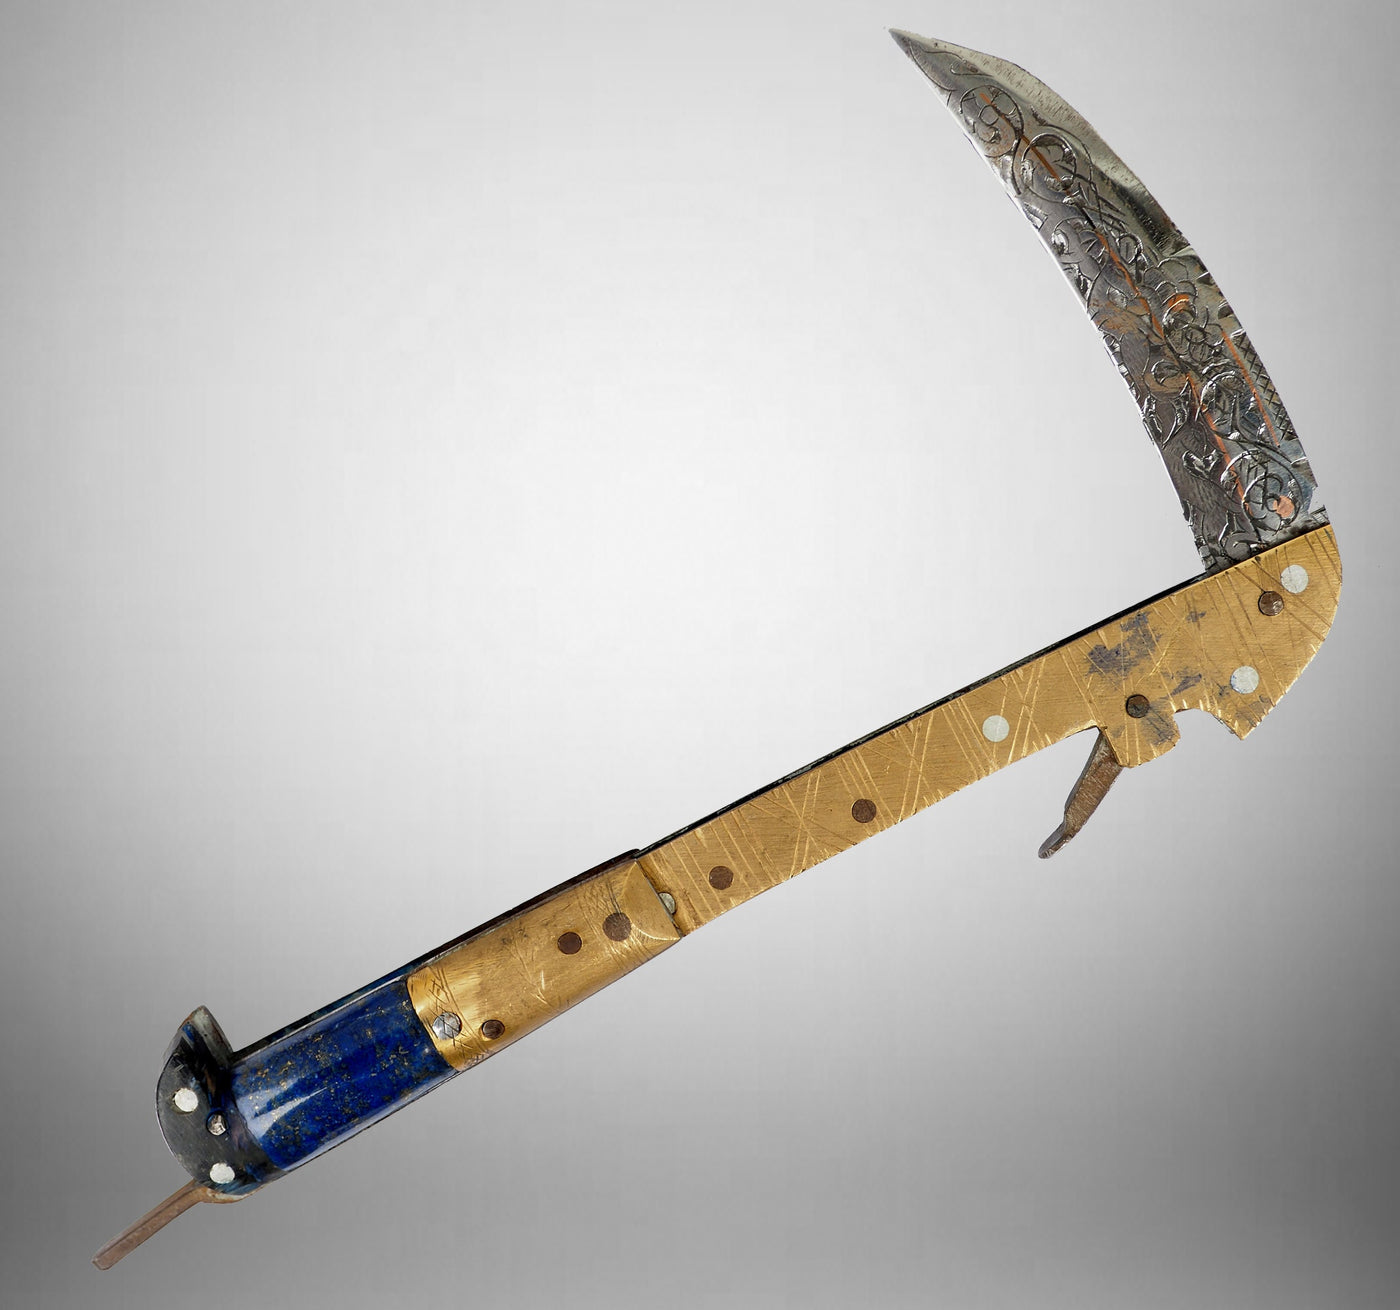 27 cm Messer Dolch choora dagger lohar Khybe messer Klappsense klappmesser Sense mit Lapis Lazuli Griff  aus Afghanistan Pakistan  Nr:21/G  Orientsbazar   